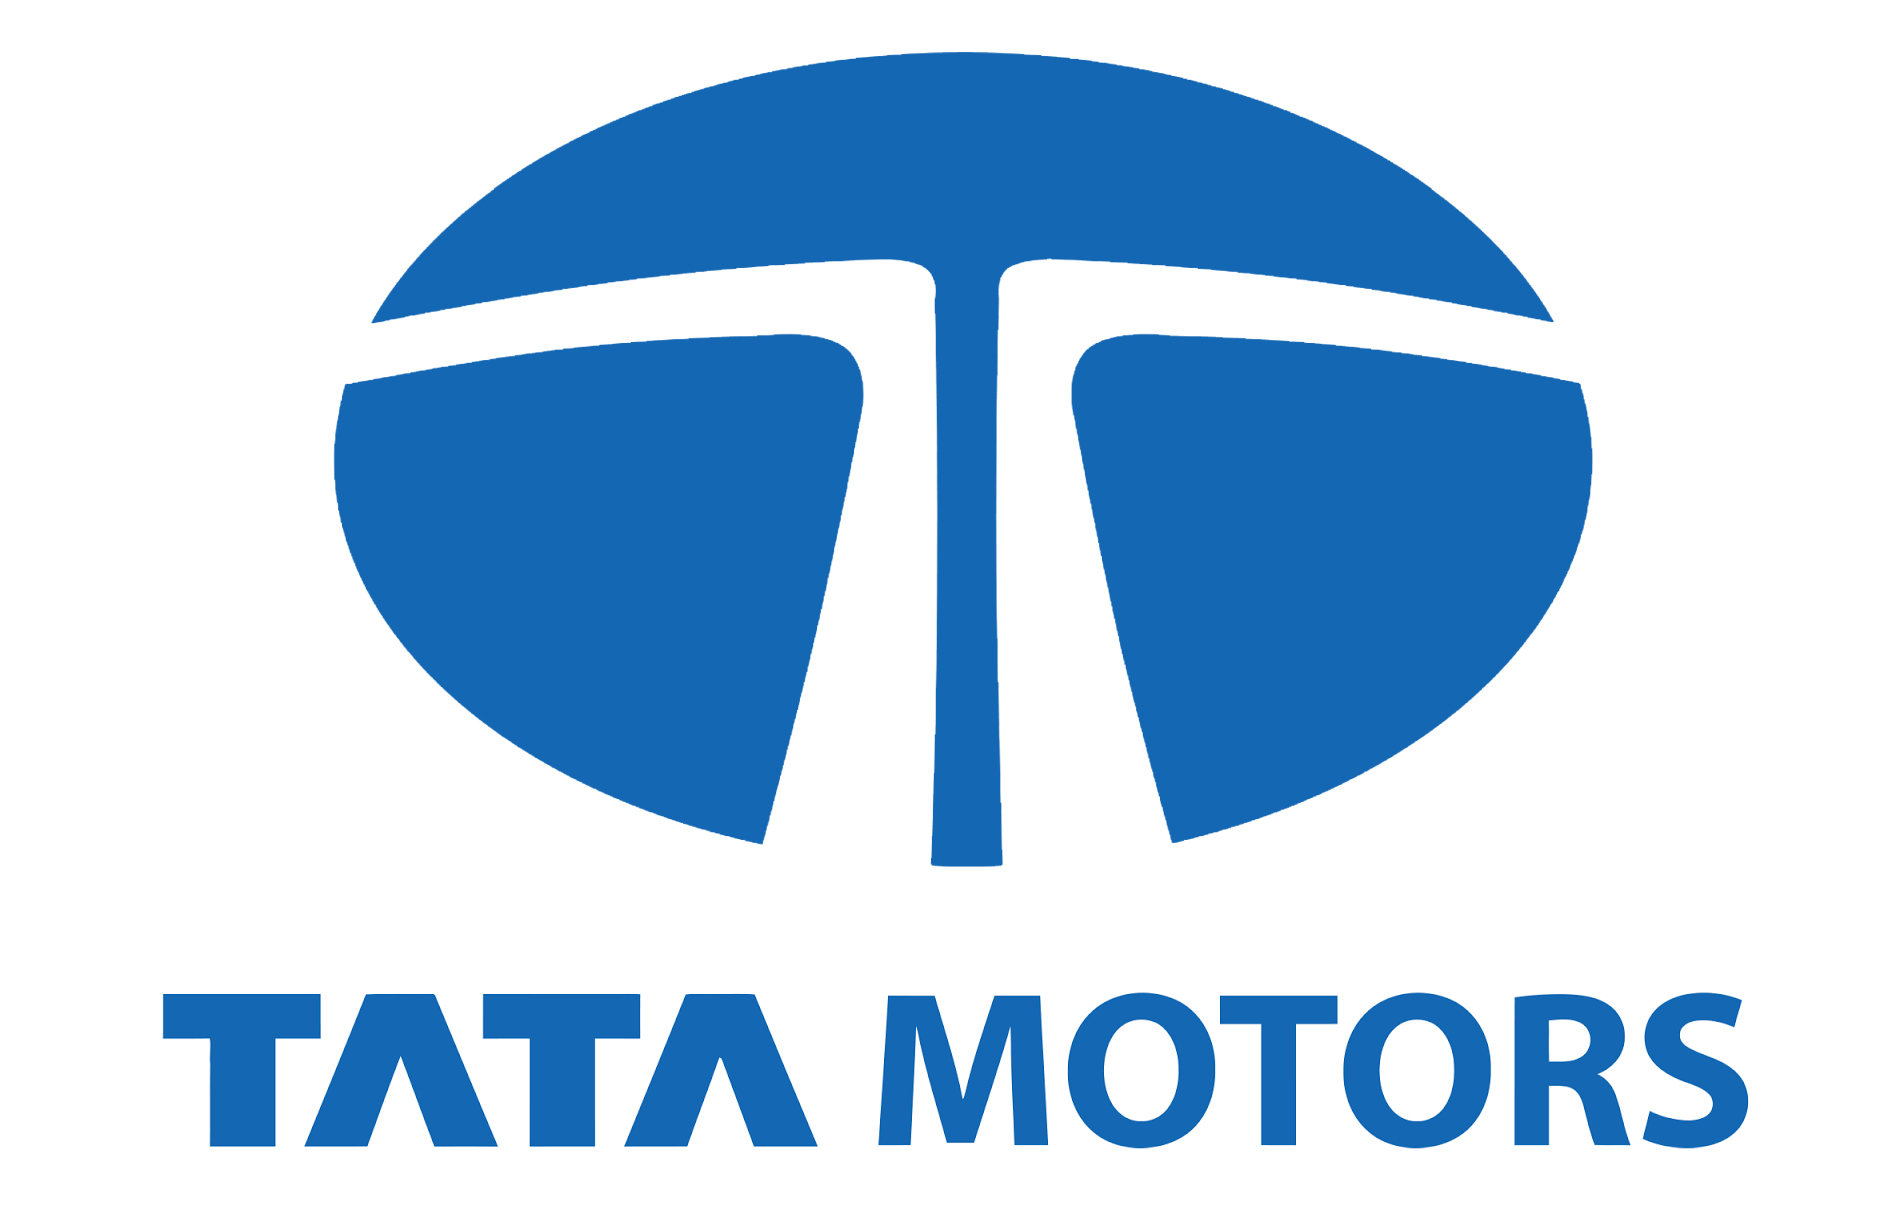 Tata Motors Cars Showroom - Midas Motors|Show Room|Automotive